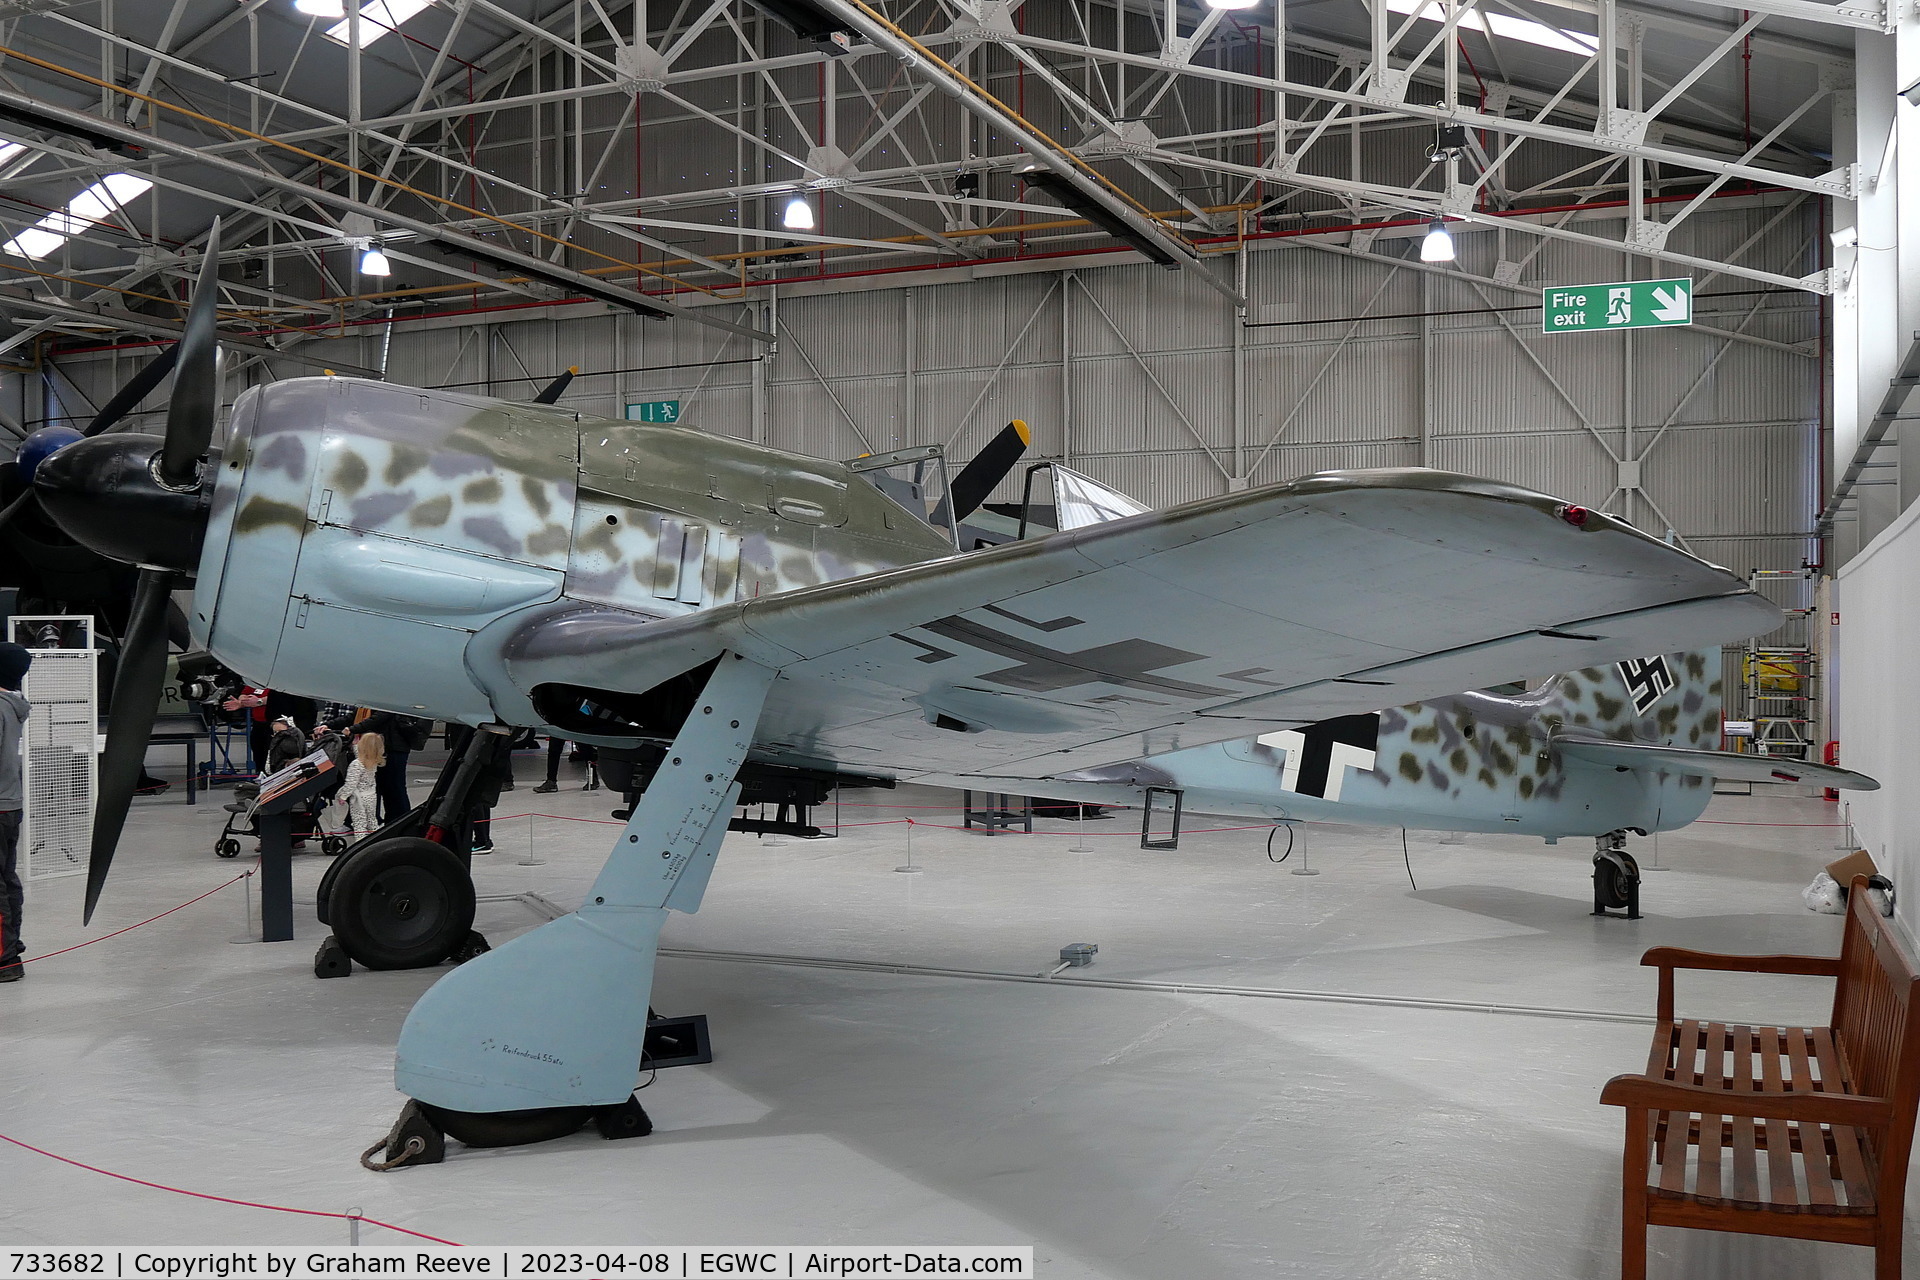 733682, 1944 Focke-Wulf Fw-190A-8 C/N 733682, On display at the RAF Museum, Cosford.